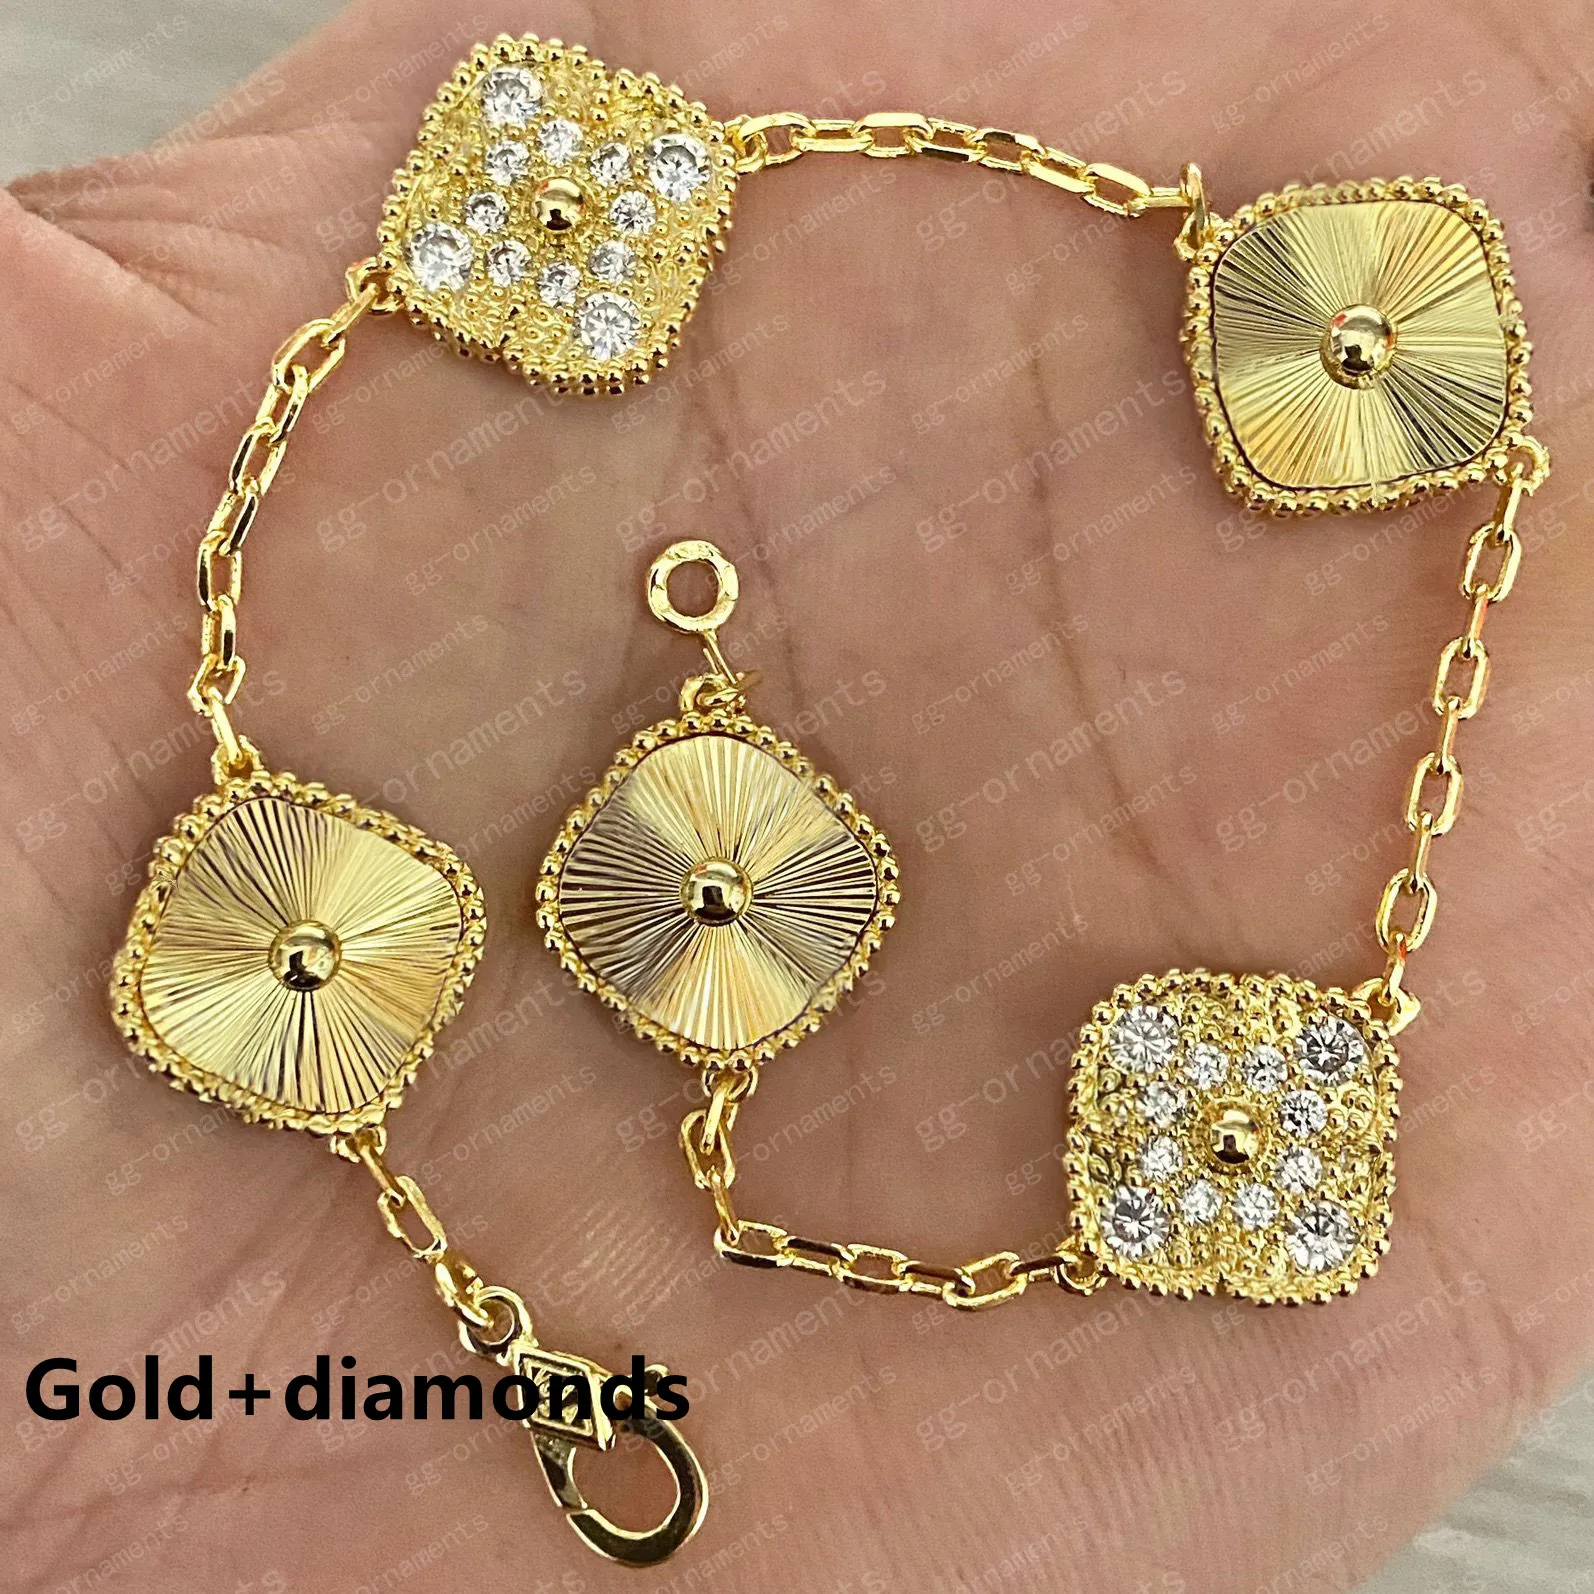 20Color Fashion Classic 4 / quatre feuilles Clover Charm Bracelets Diamond Bangle Chaîne 18K Gold Agate Shell Pérothé